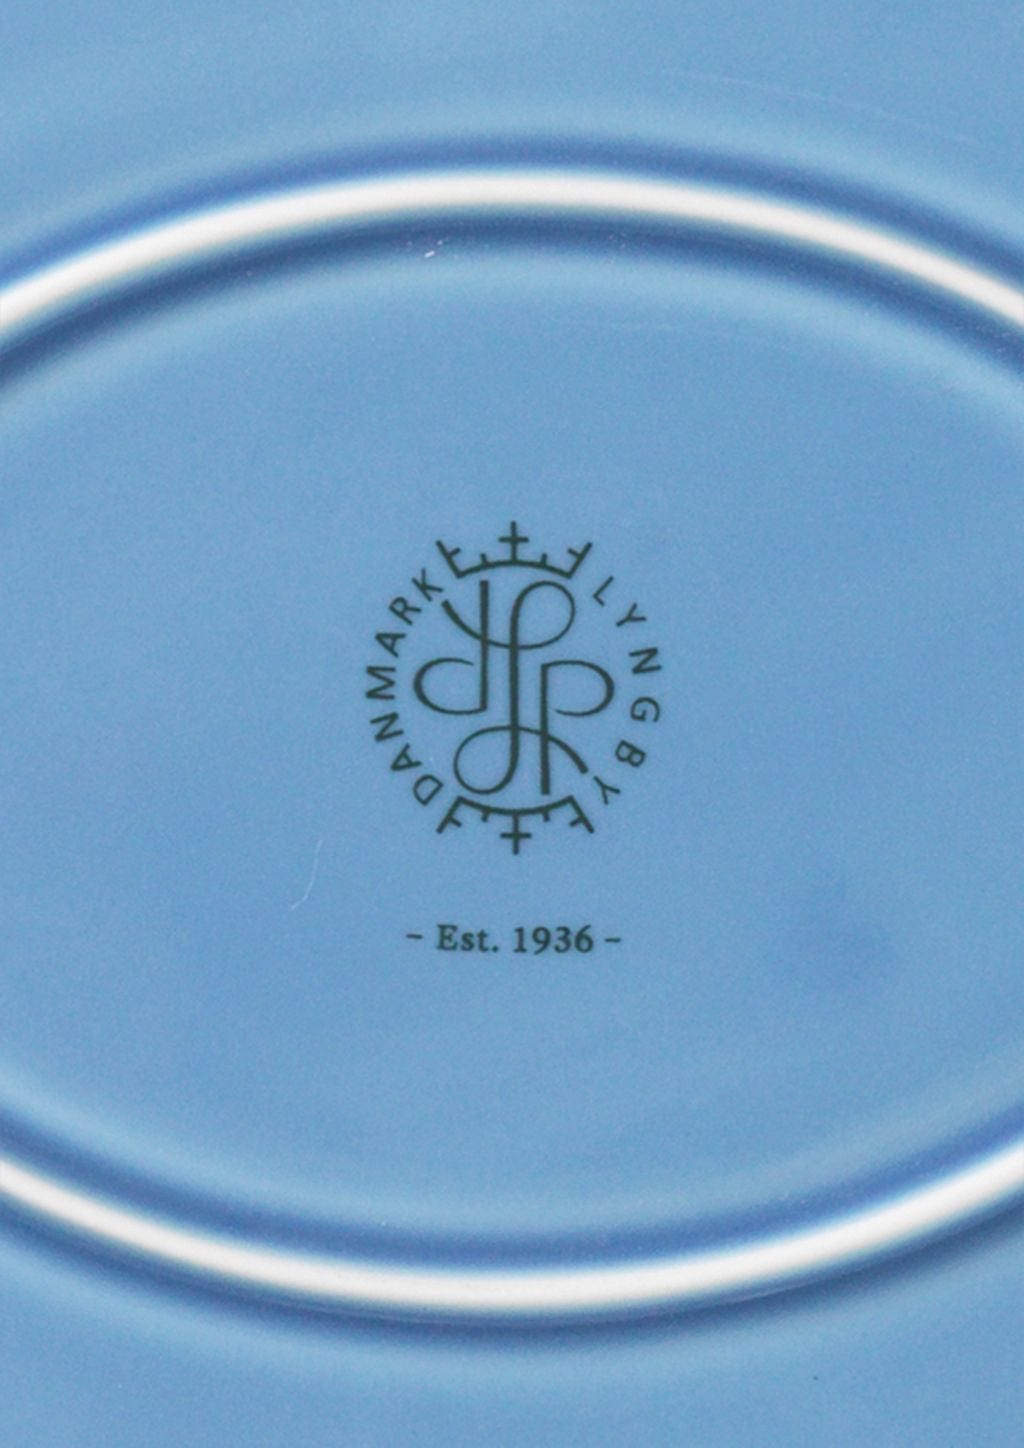 Lyngby Porcelæn Rhombe Farbe Ovaler Servierplatte 28,5x21,5, Blau